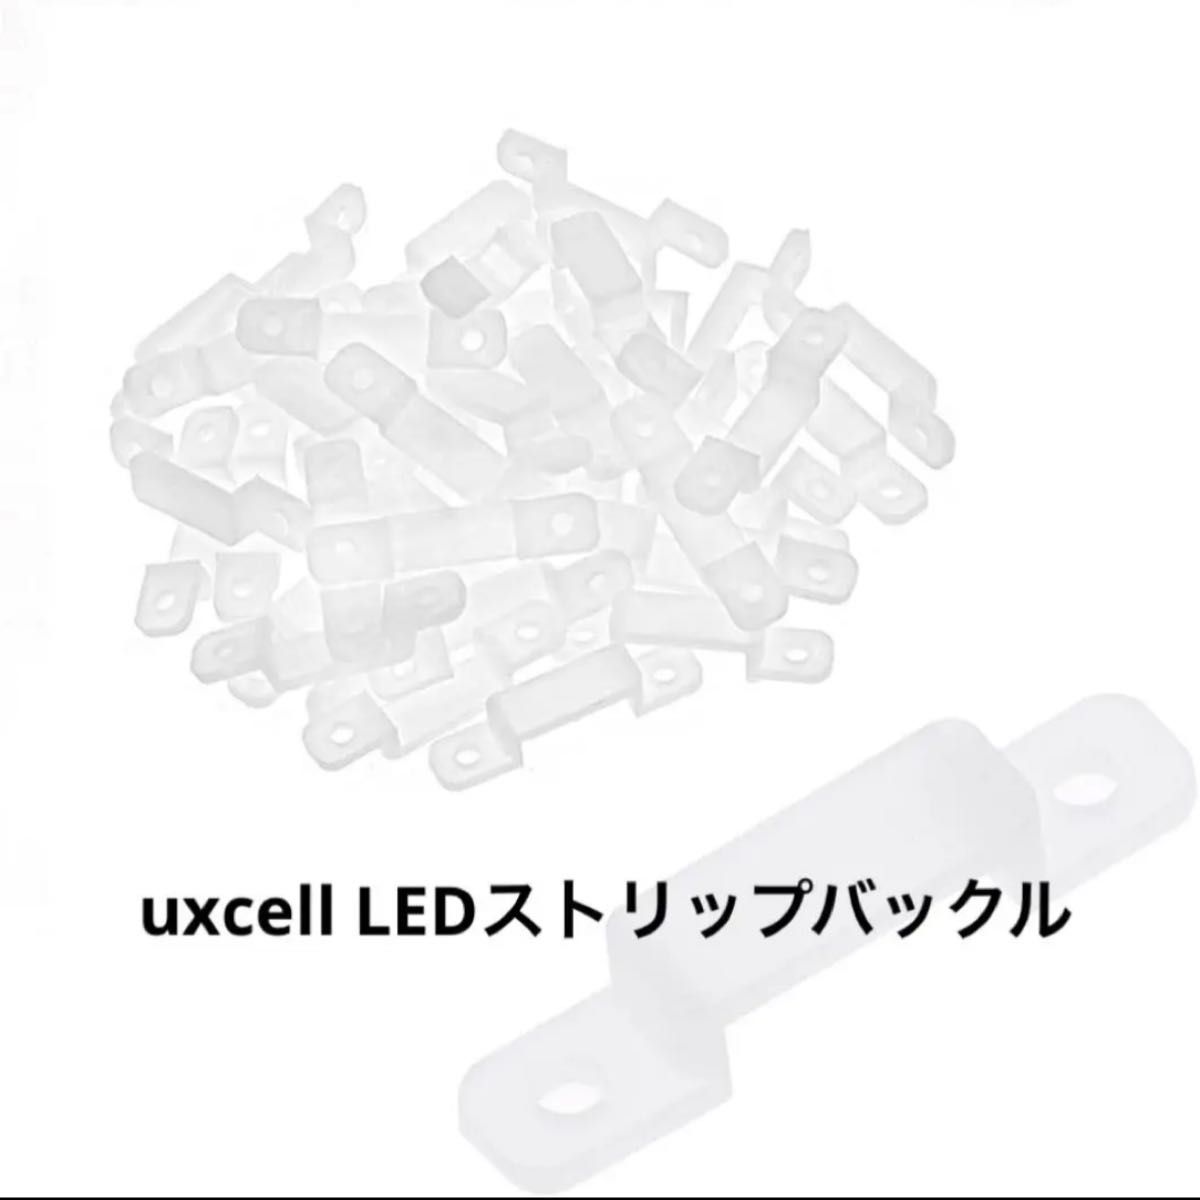 uxcell LEDストリップバックル シリコン ホワイト 10mmワイド